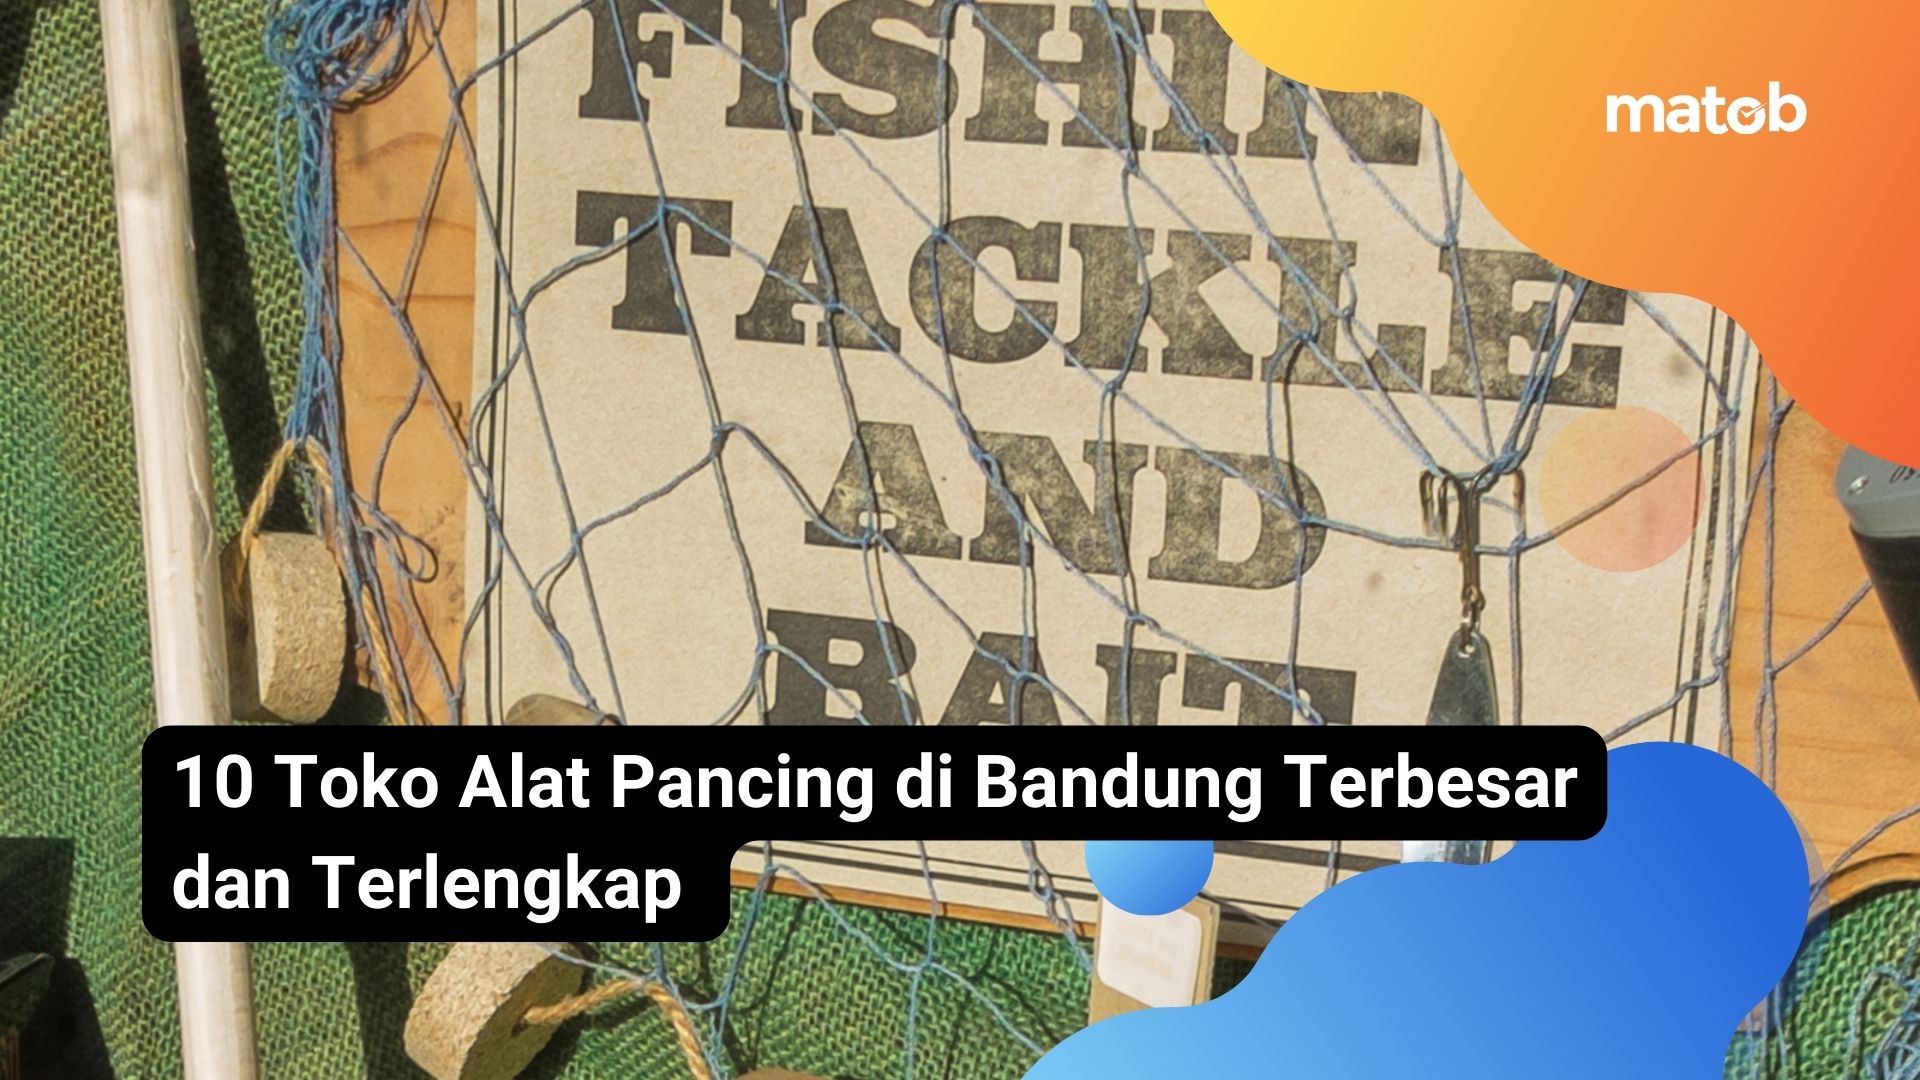 10 Toko Alat Pancing di Bandung Terbesar dan Terlengkap